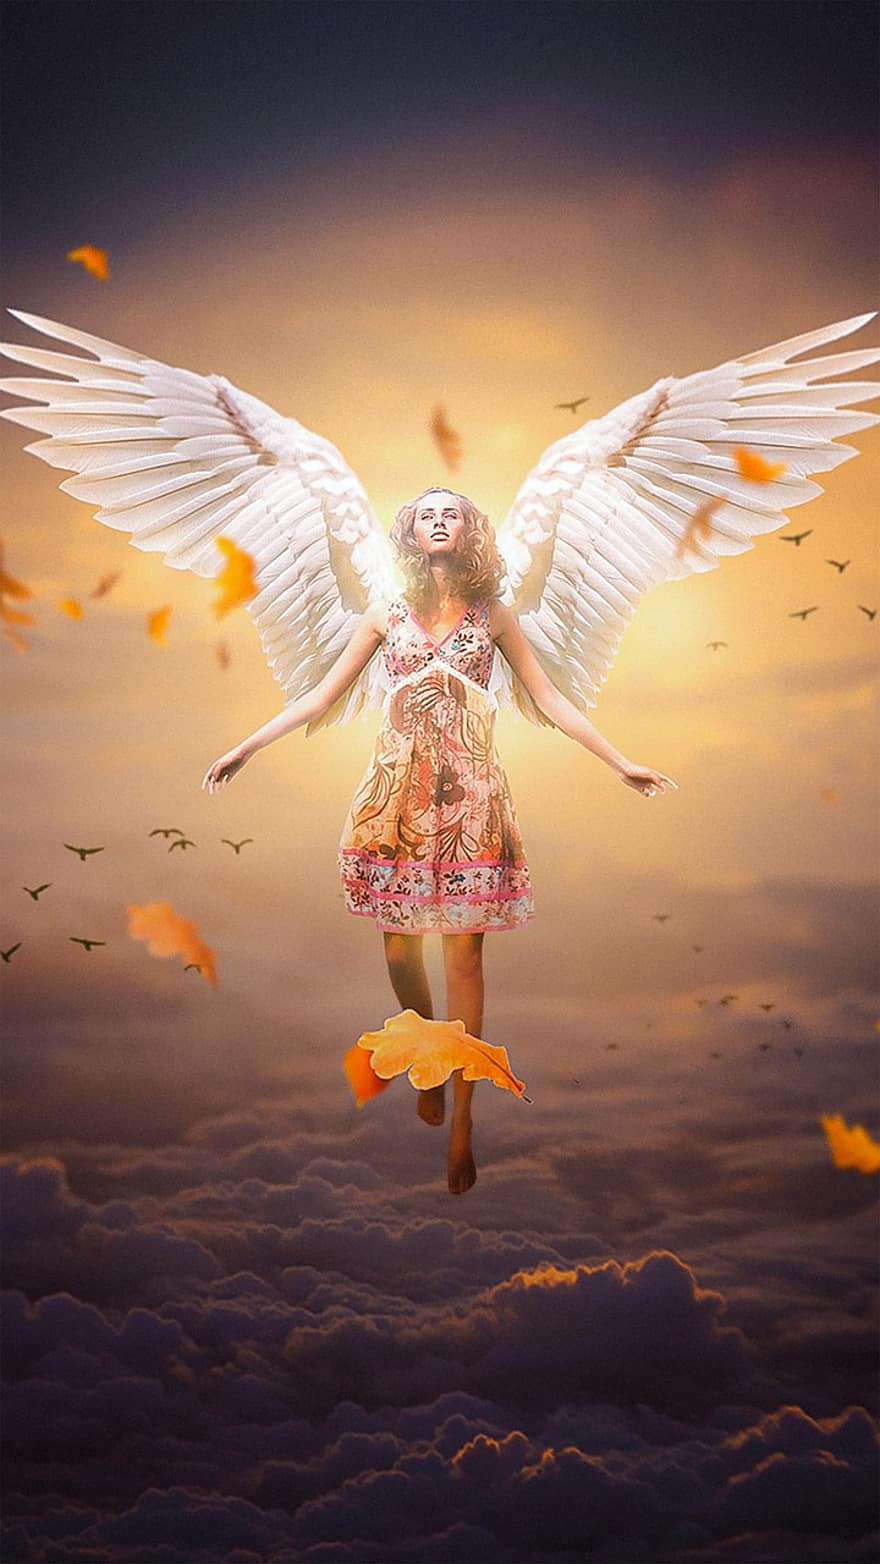 देवदूत, महिला, पंख, परि के पंख, कपोल कल्पित, महिला परी, ख्वाब, आकाश, लड़की, photomontage, फ़ोटो में जोड़तोड़